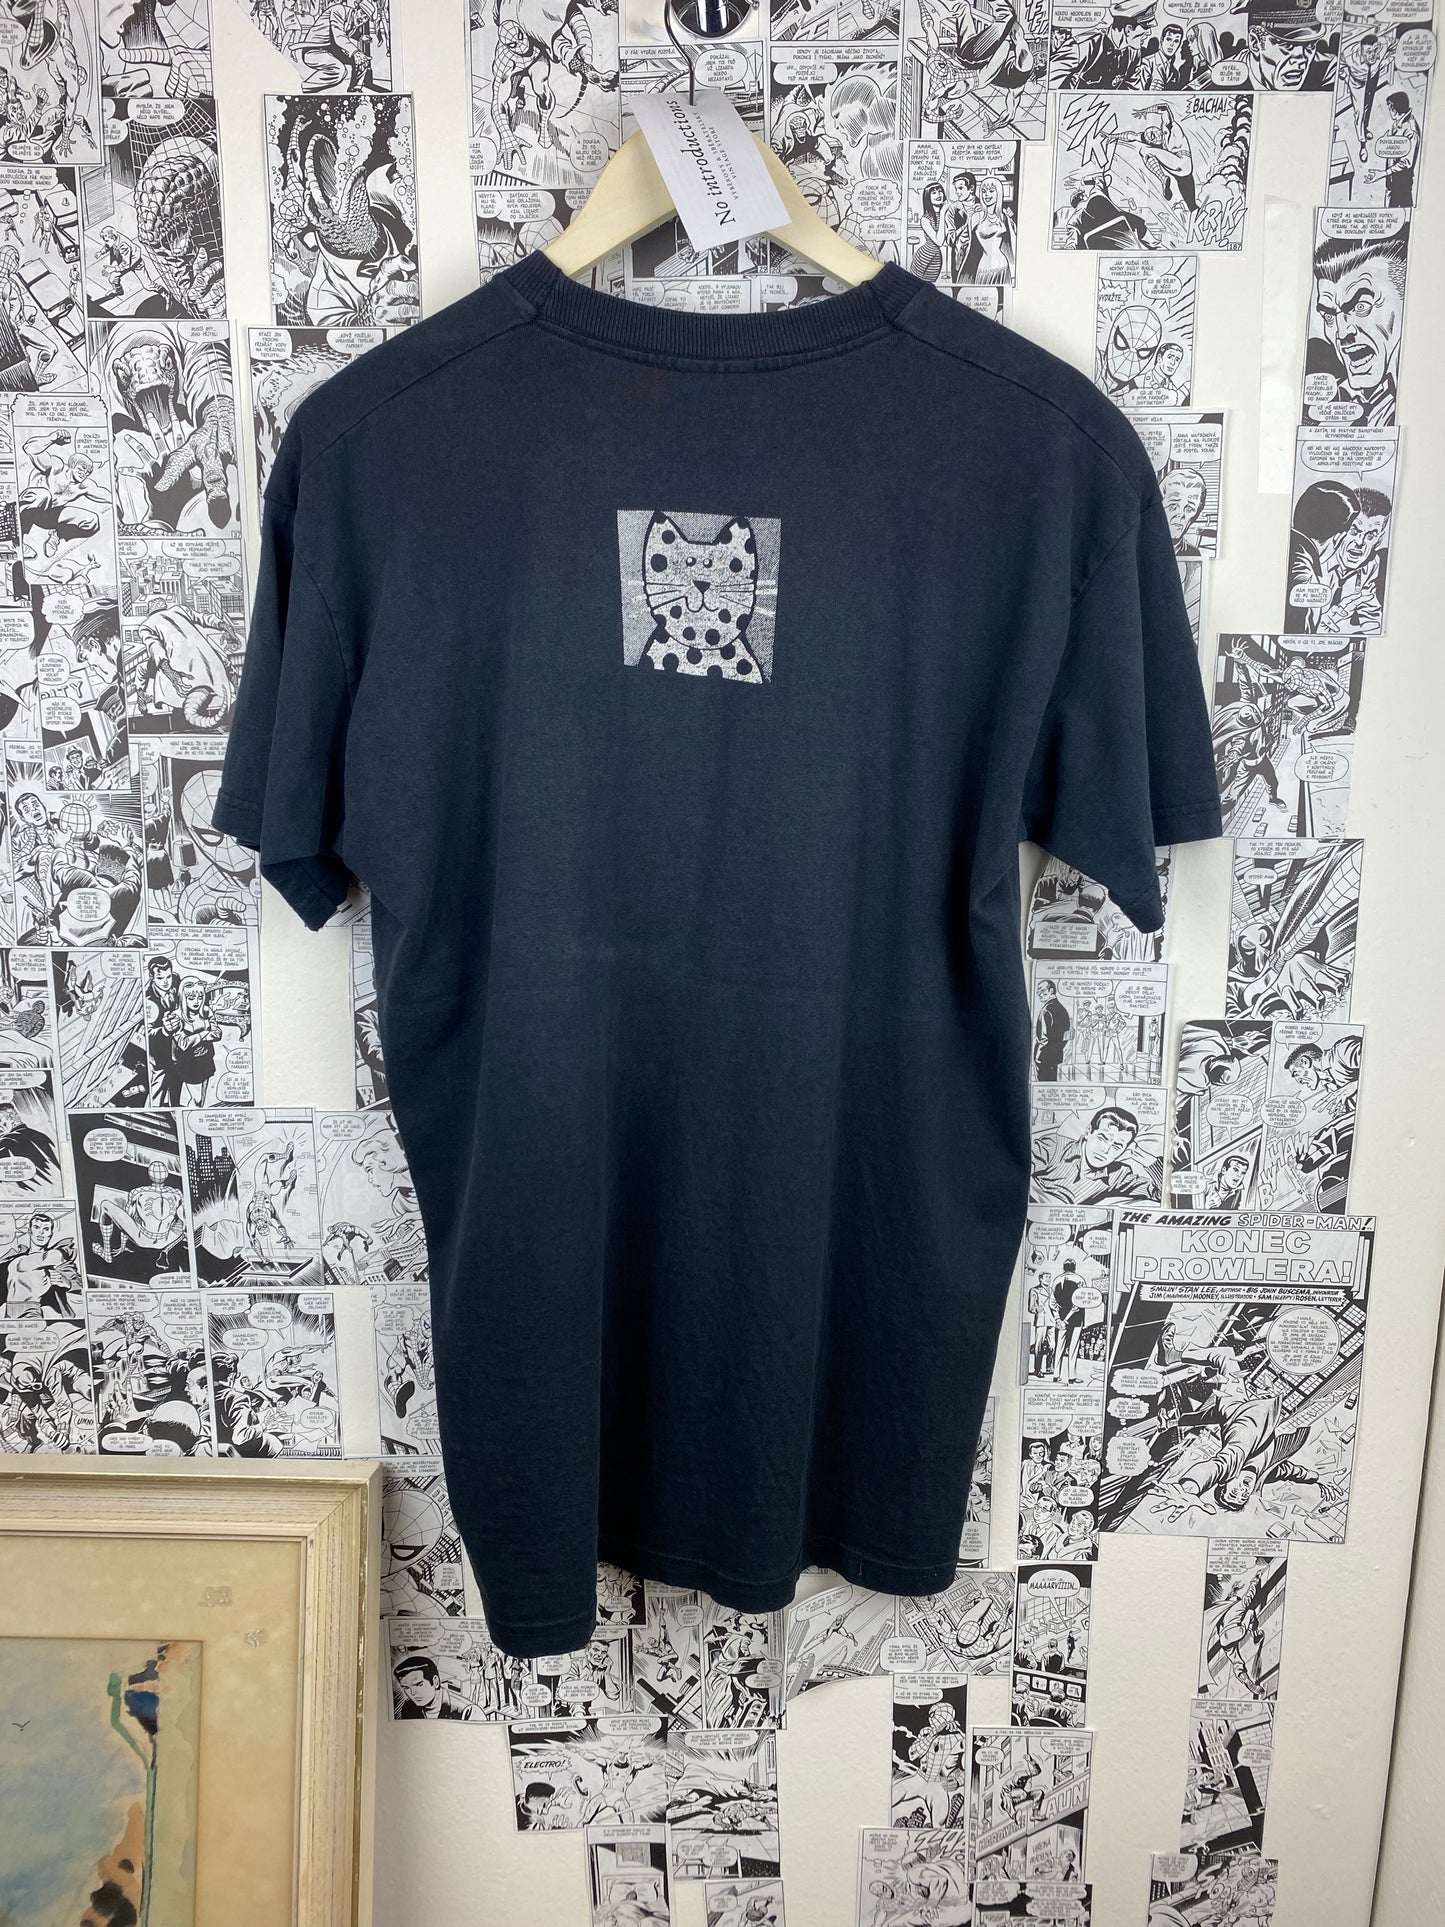 Vintage Cat 90s Distressed t-shirt - size L